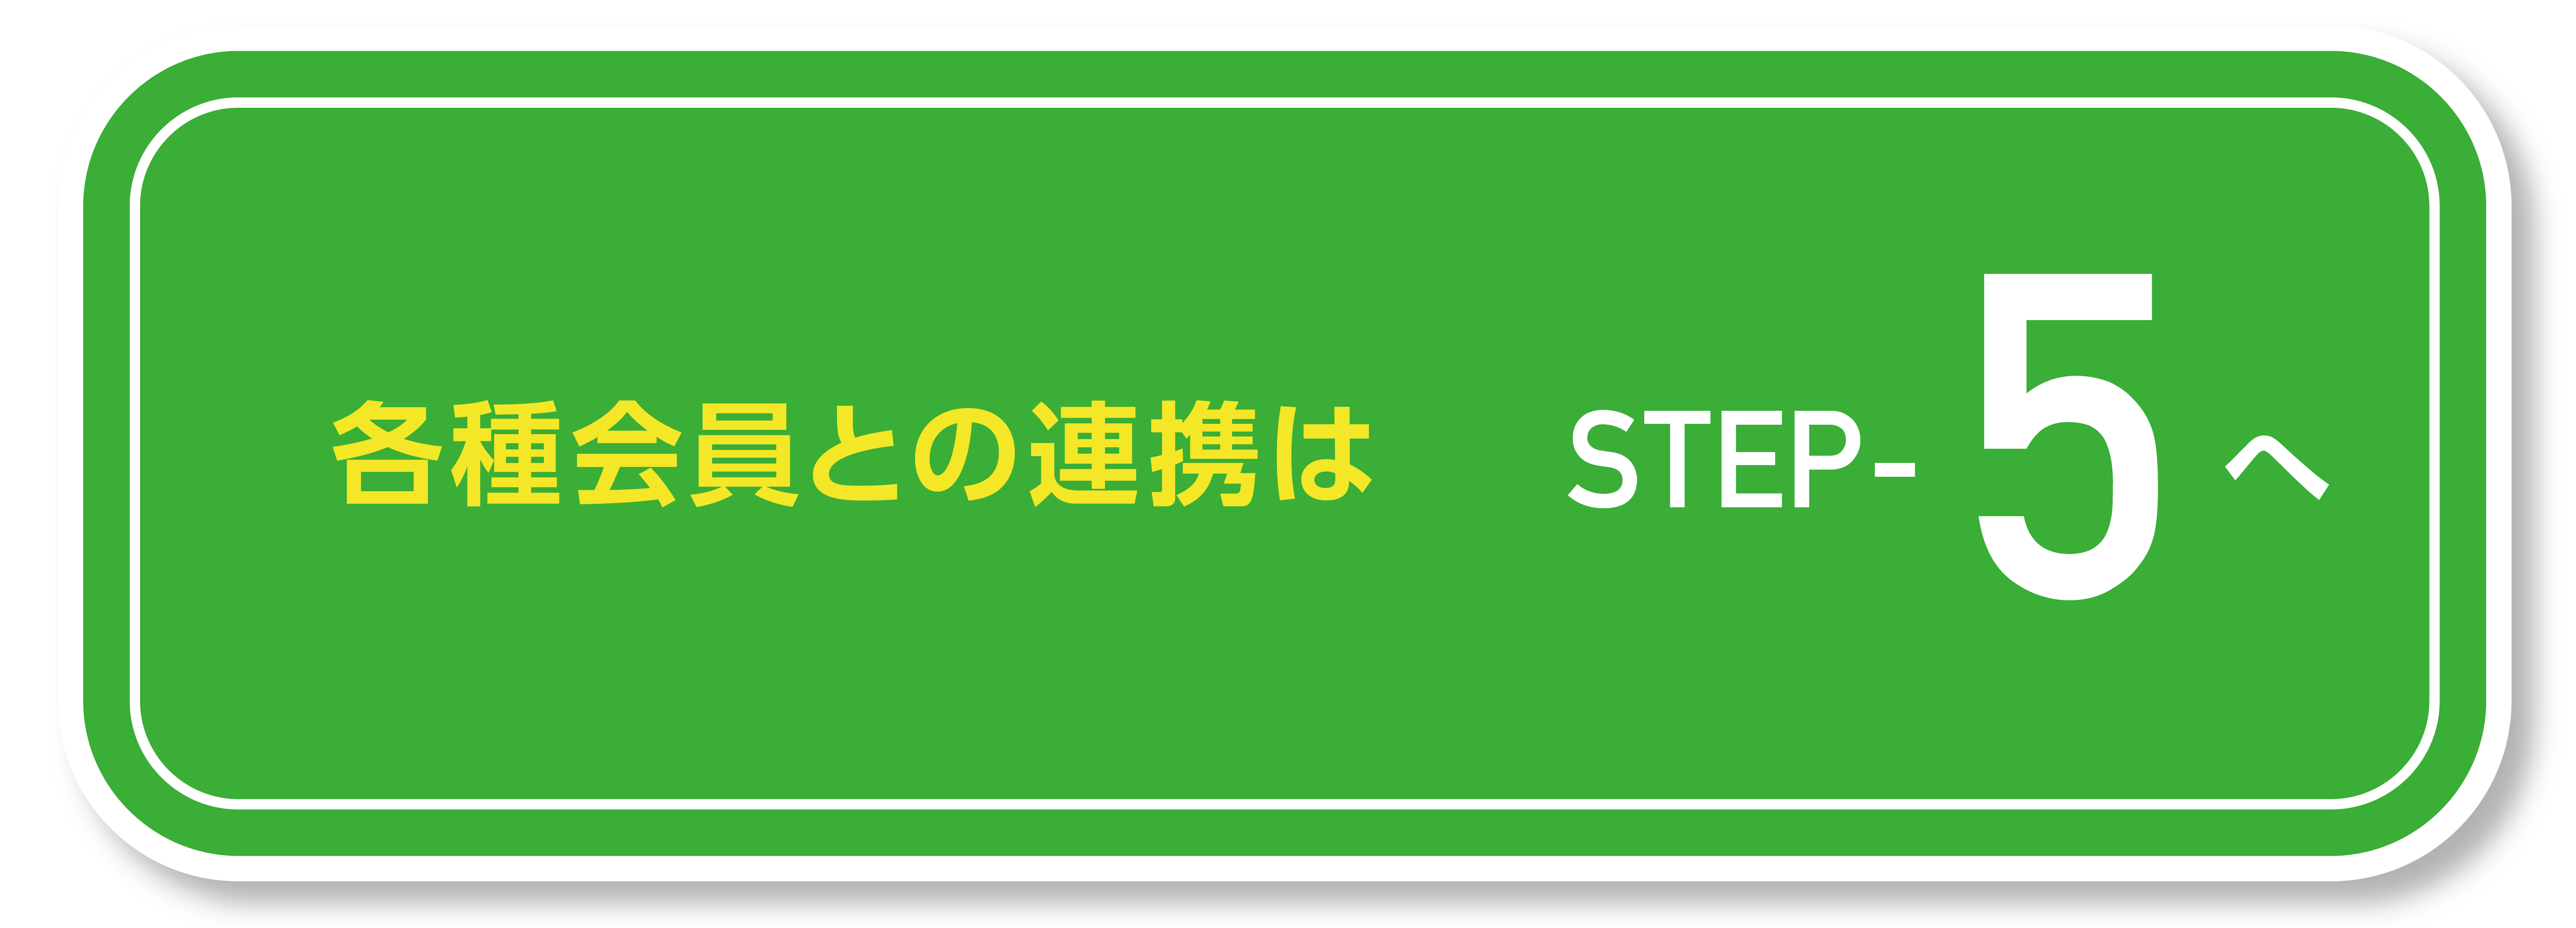 近鉄ゴルフアンドリゾート公式LINE step5